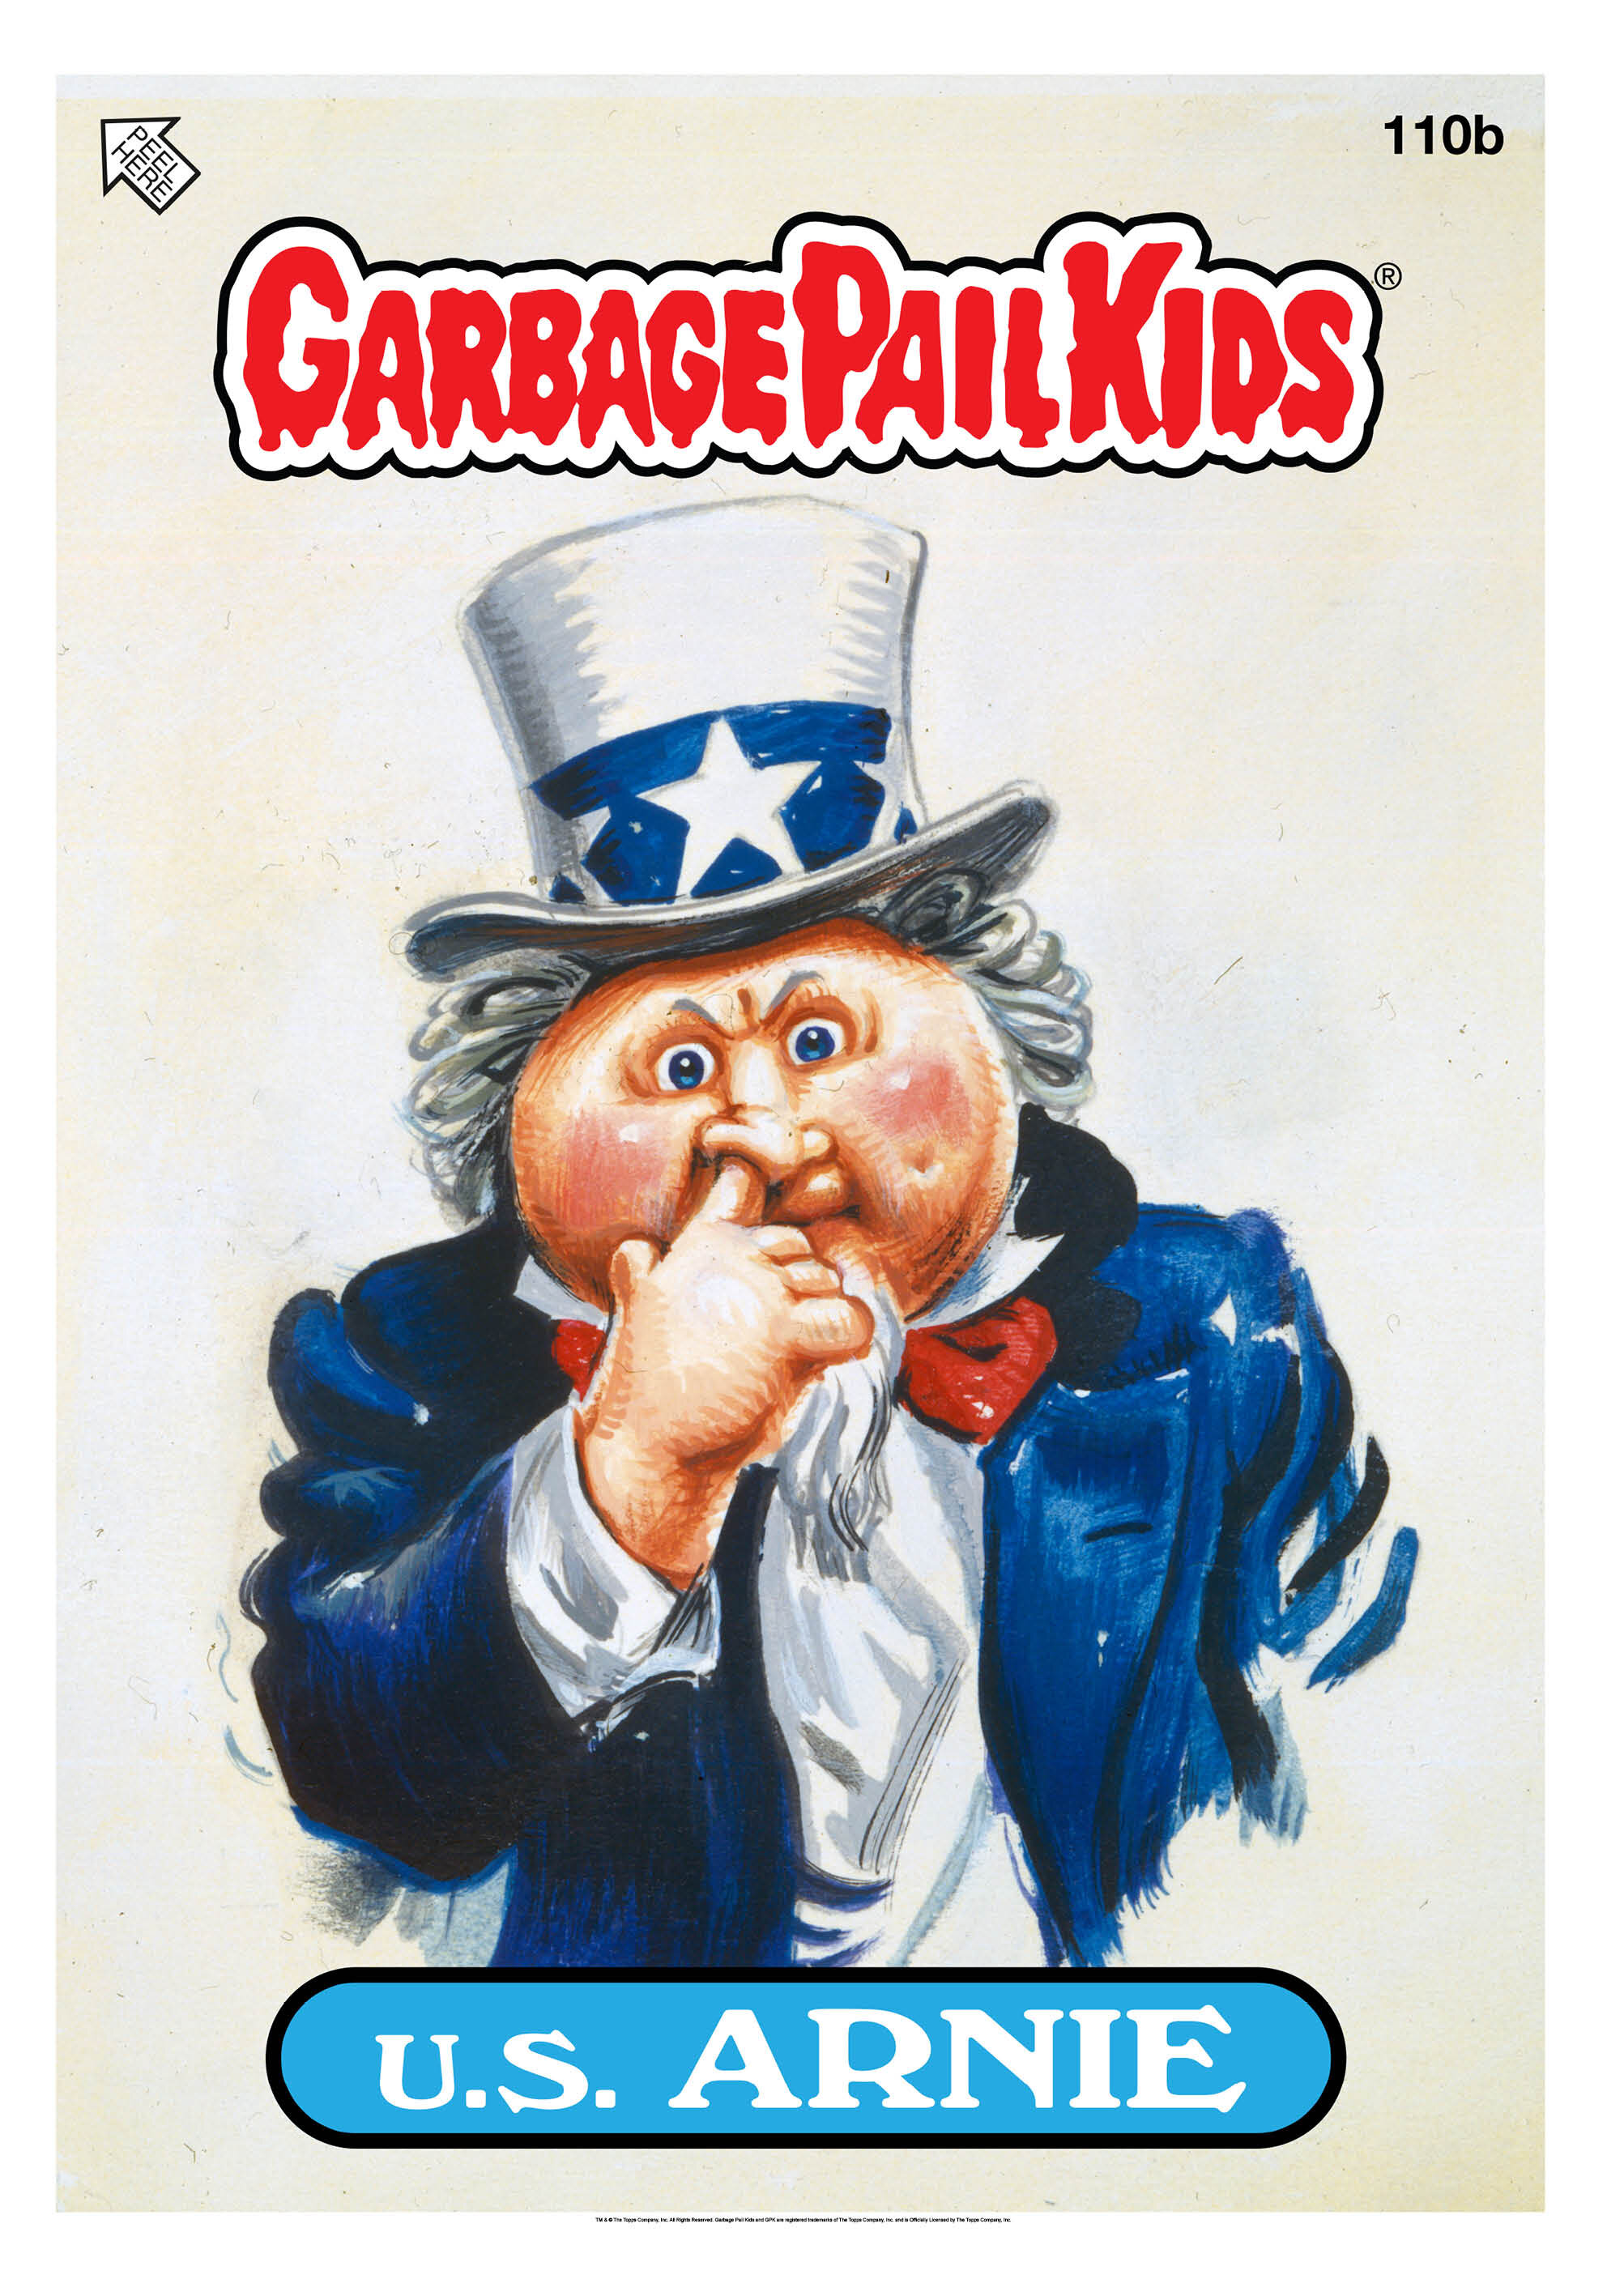 Garbage Pail Kids - U.S. Arnie Poster